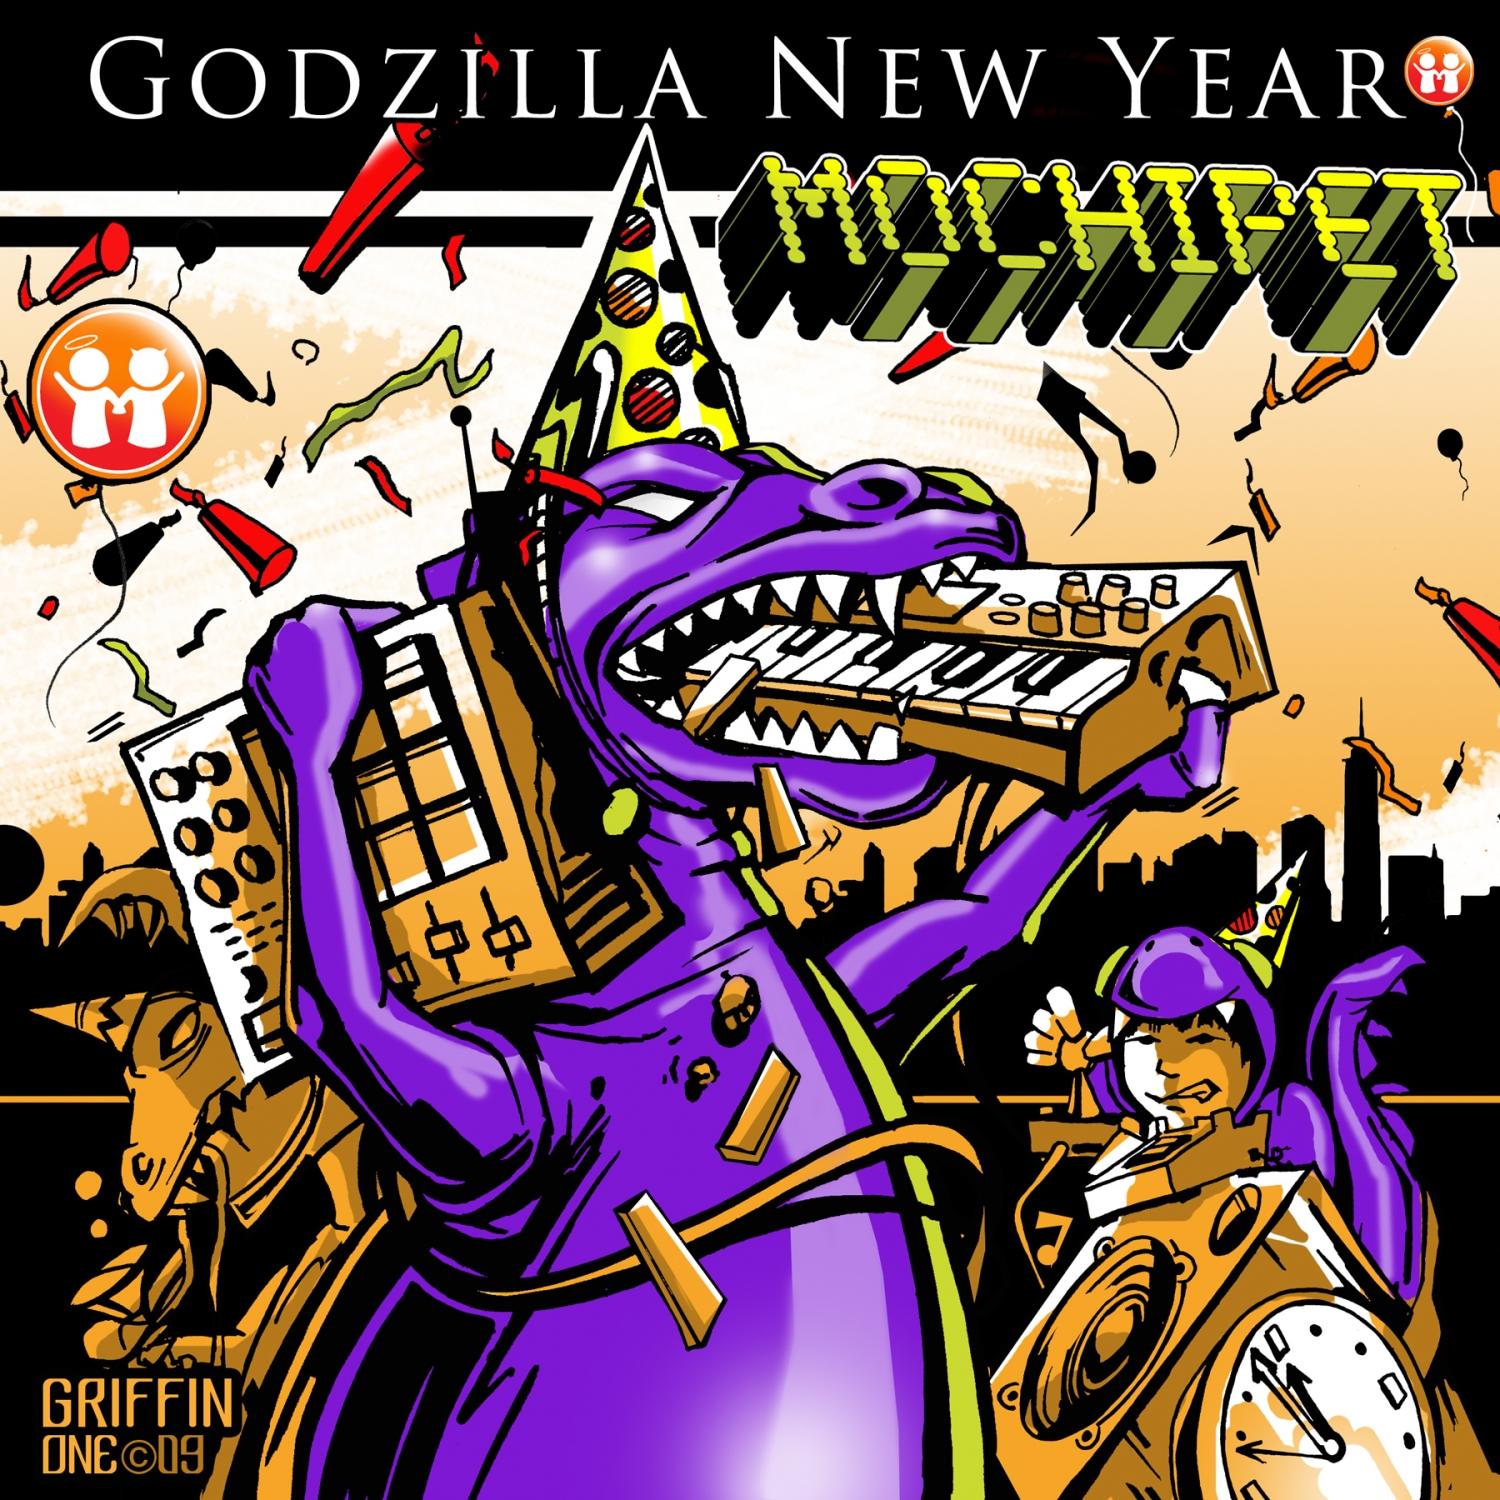 Godzilla New Year (Ana Sia Remix)